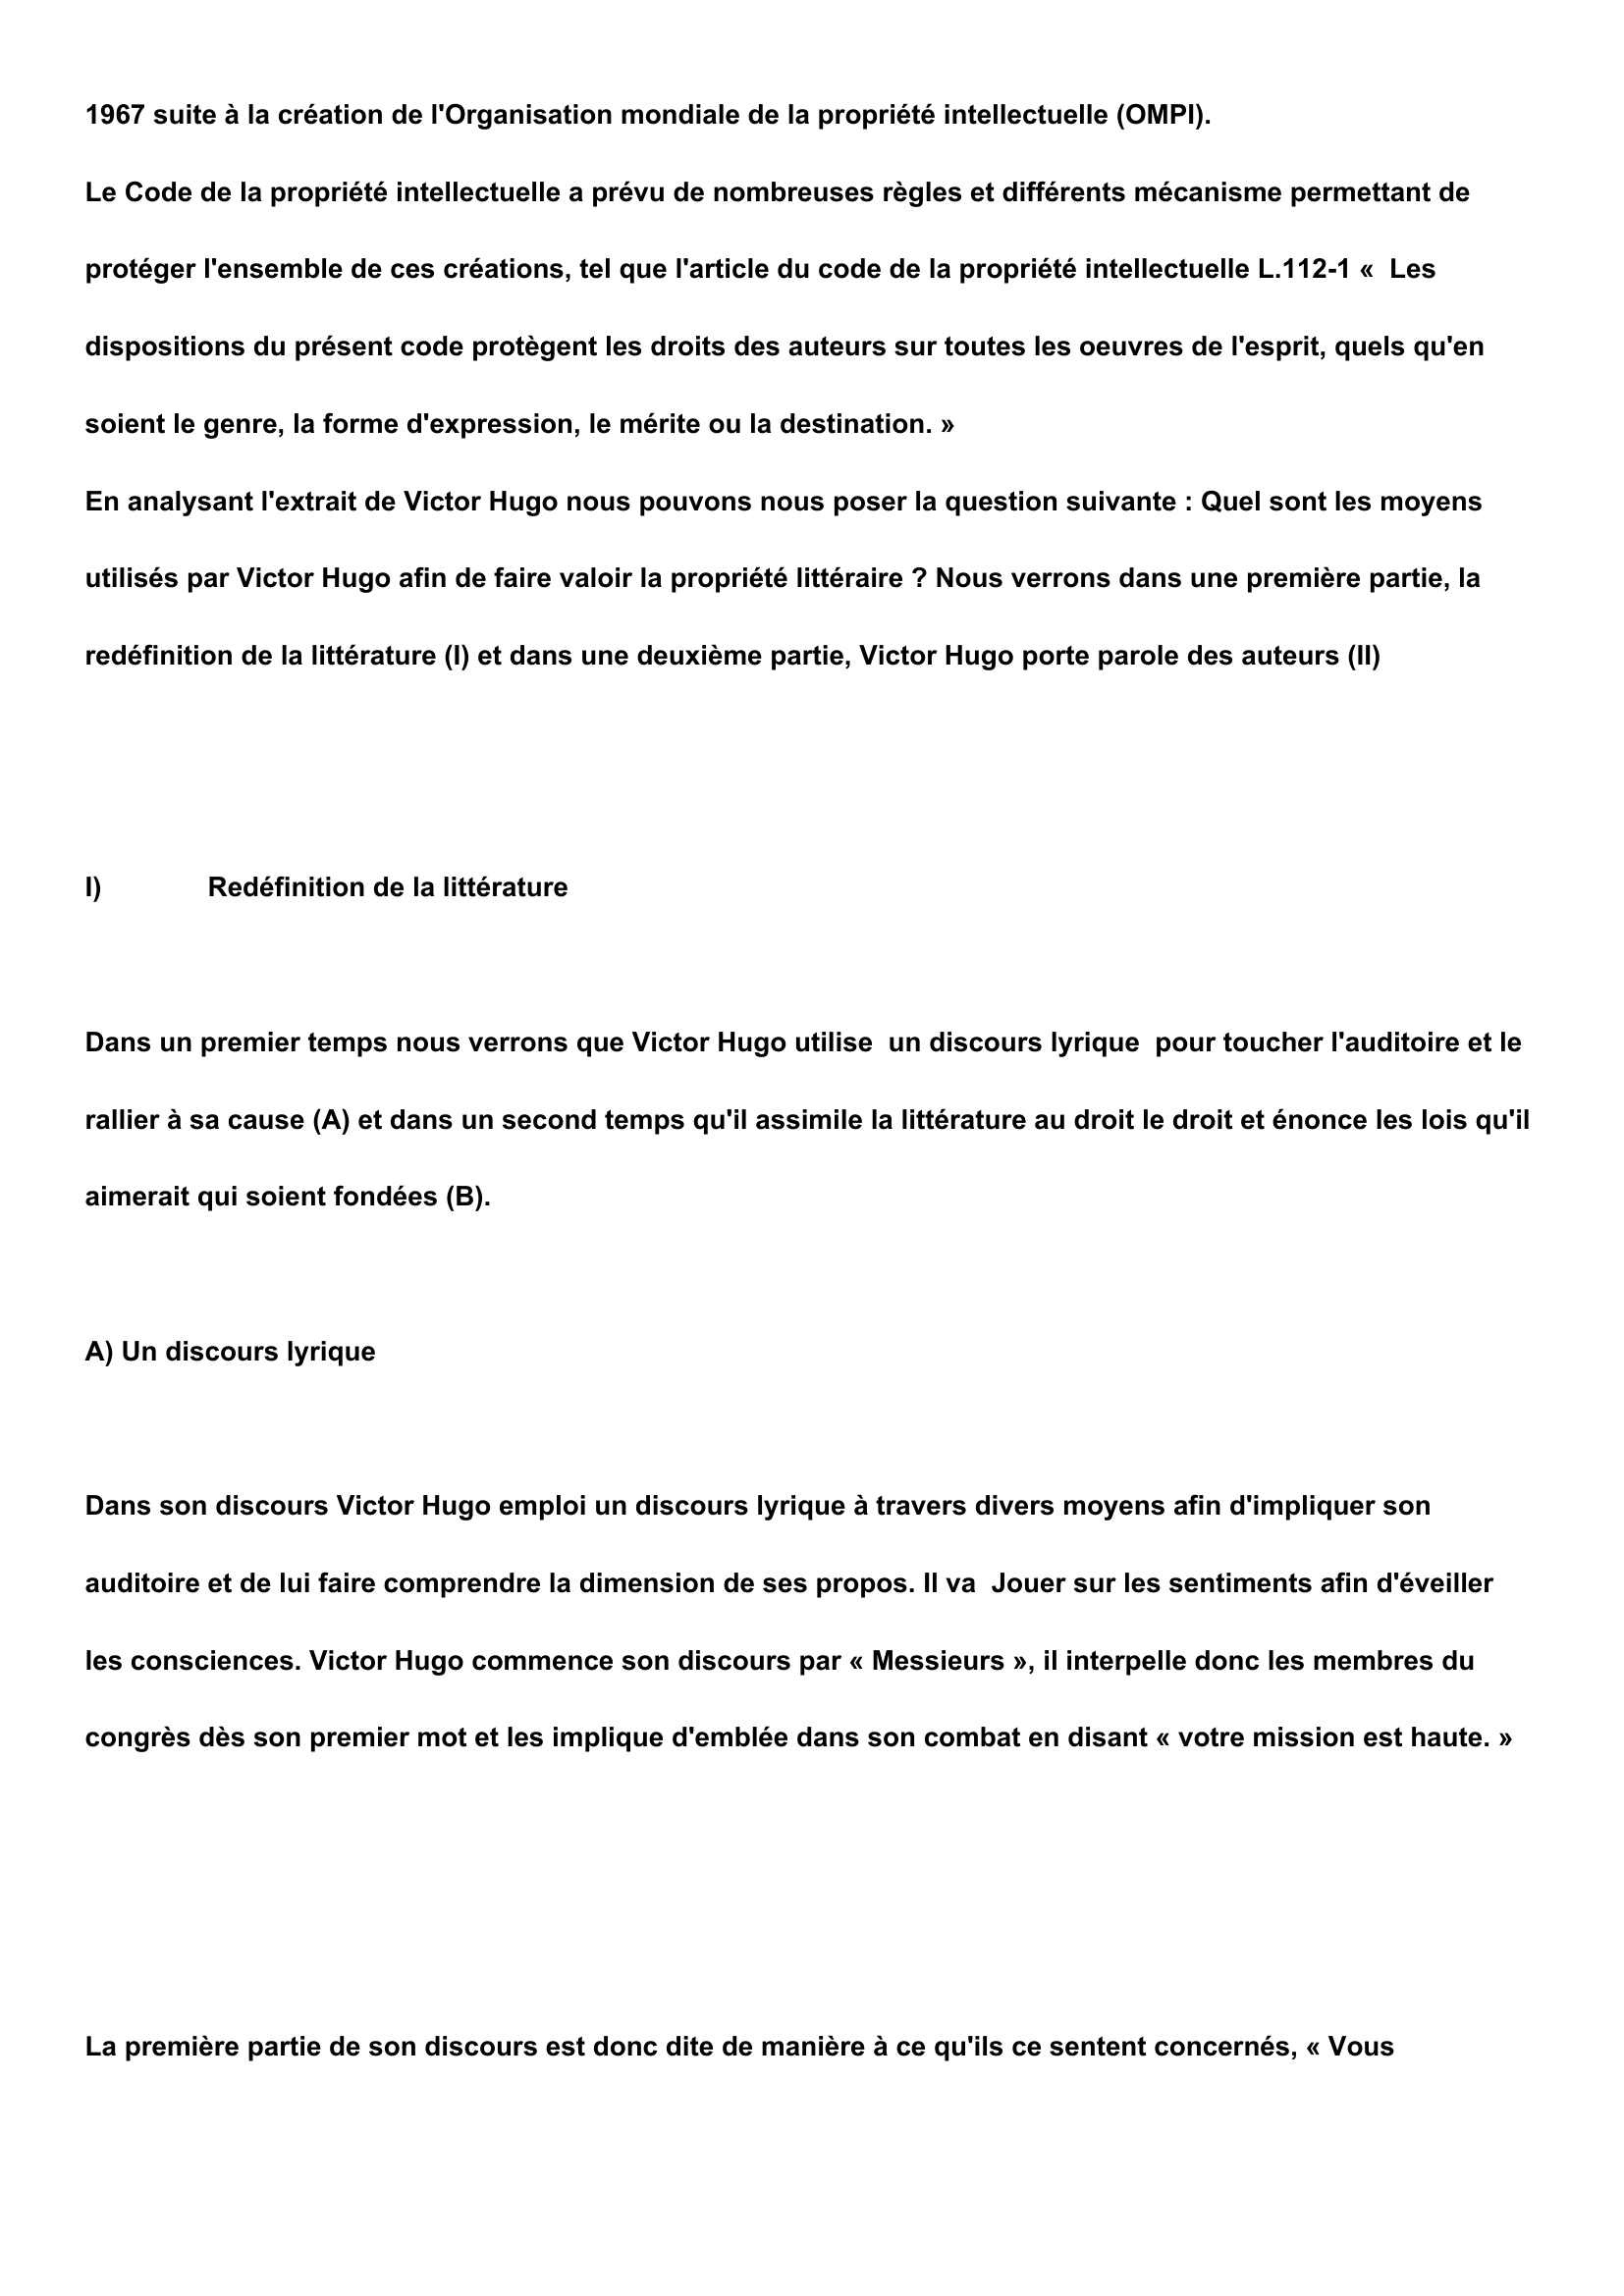 Prévisualisation du document Extrait du discours du congrès littéraire internationale de Victor Hugo